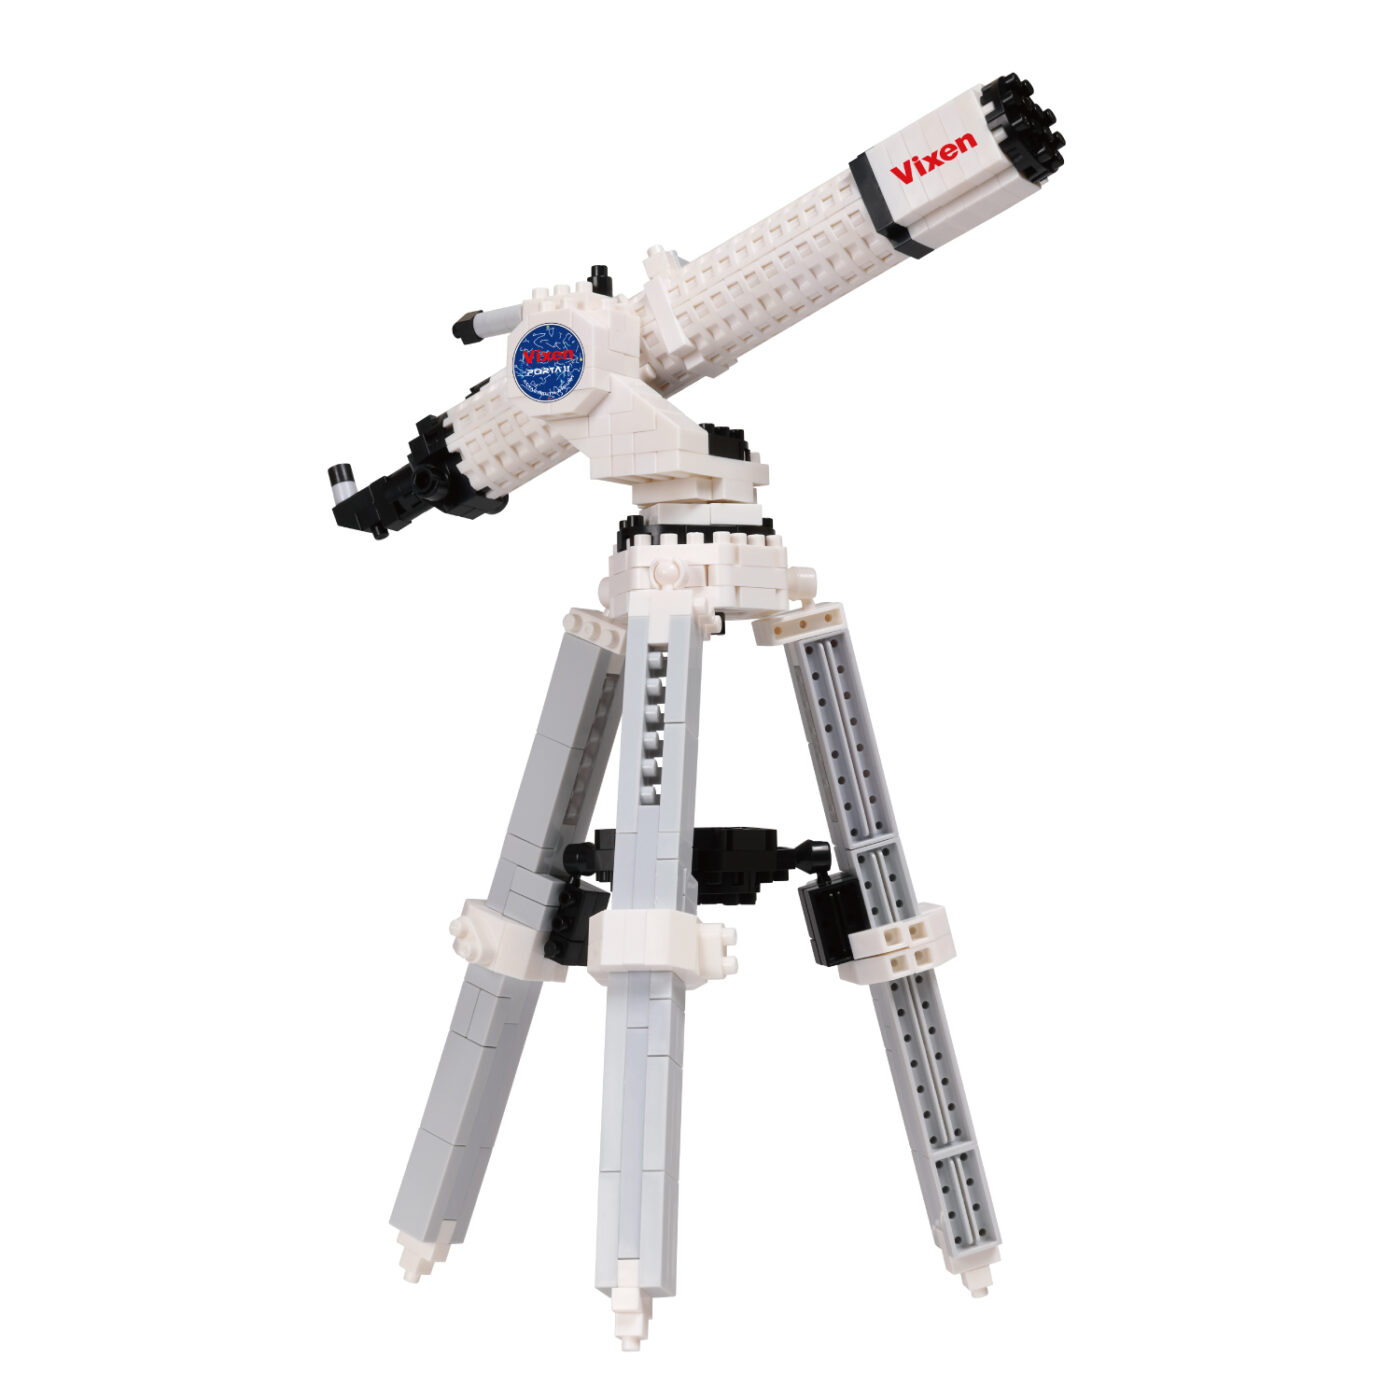 ビクセン 天体望遠鏡 ポルタ II A80Mf | CATALOG | nanoblock ...